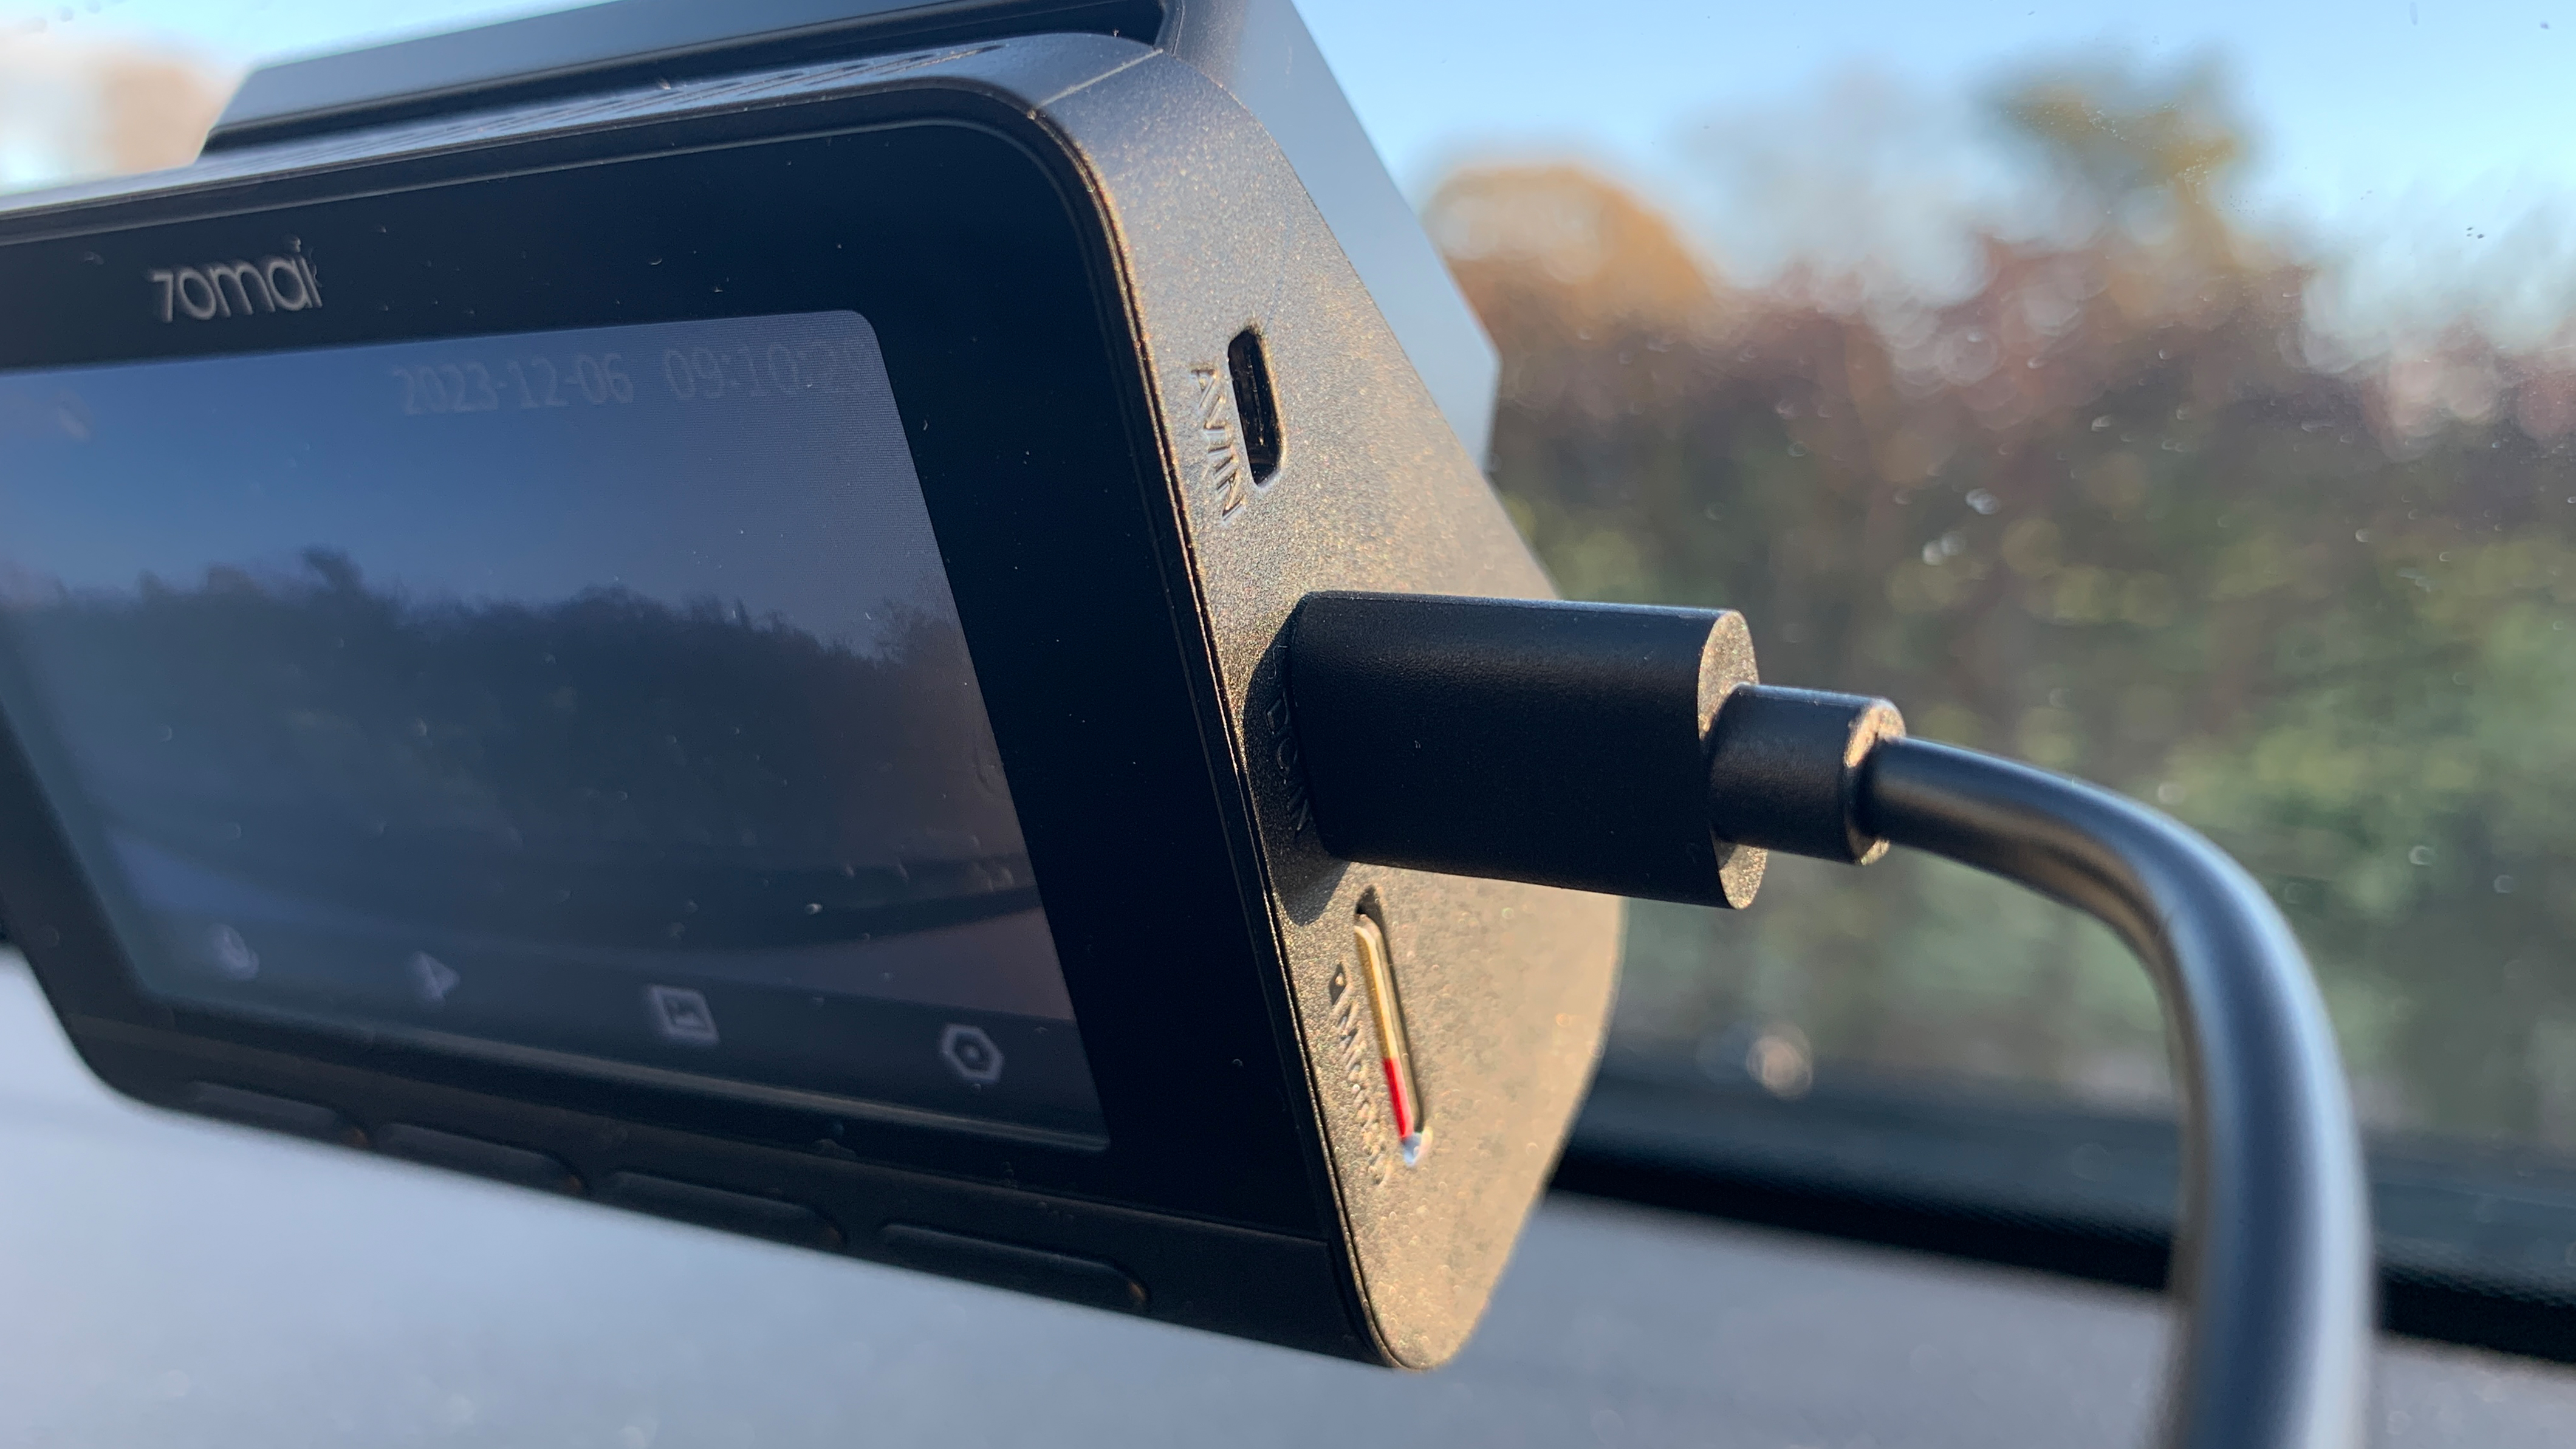 70mai 4K A810 Dash Cam boasts 4K video, AI smarts